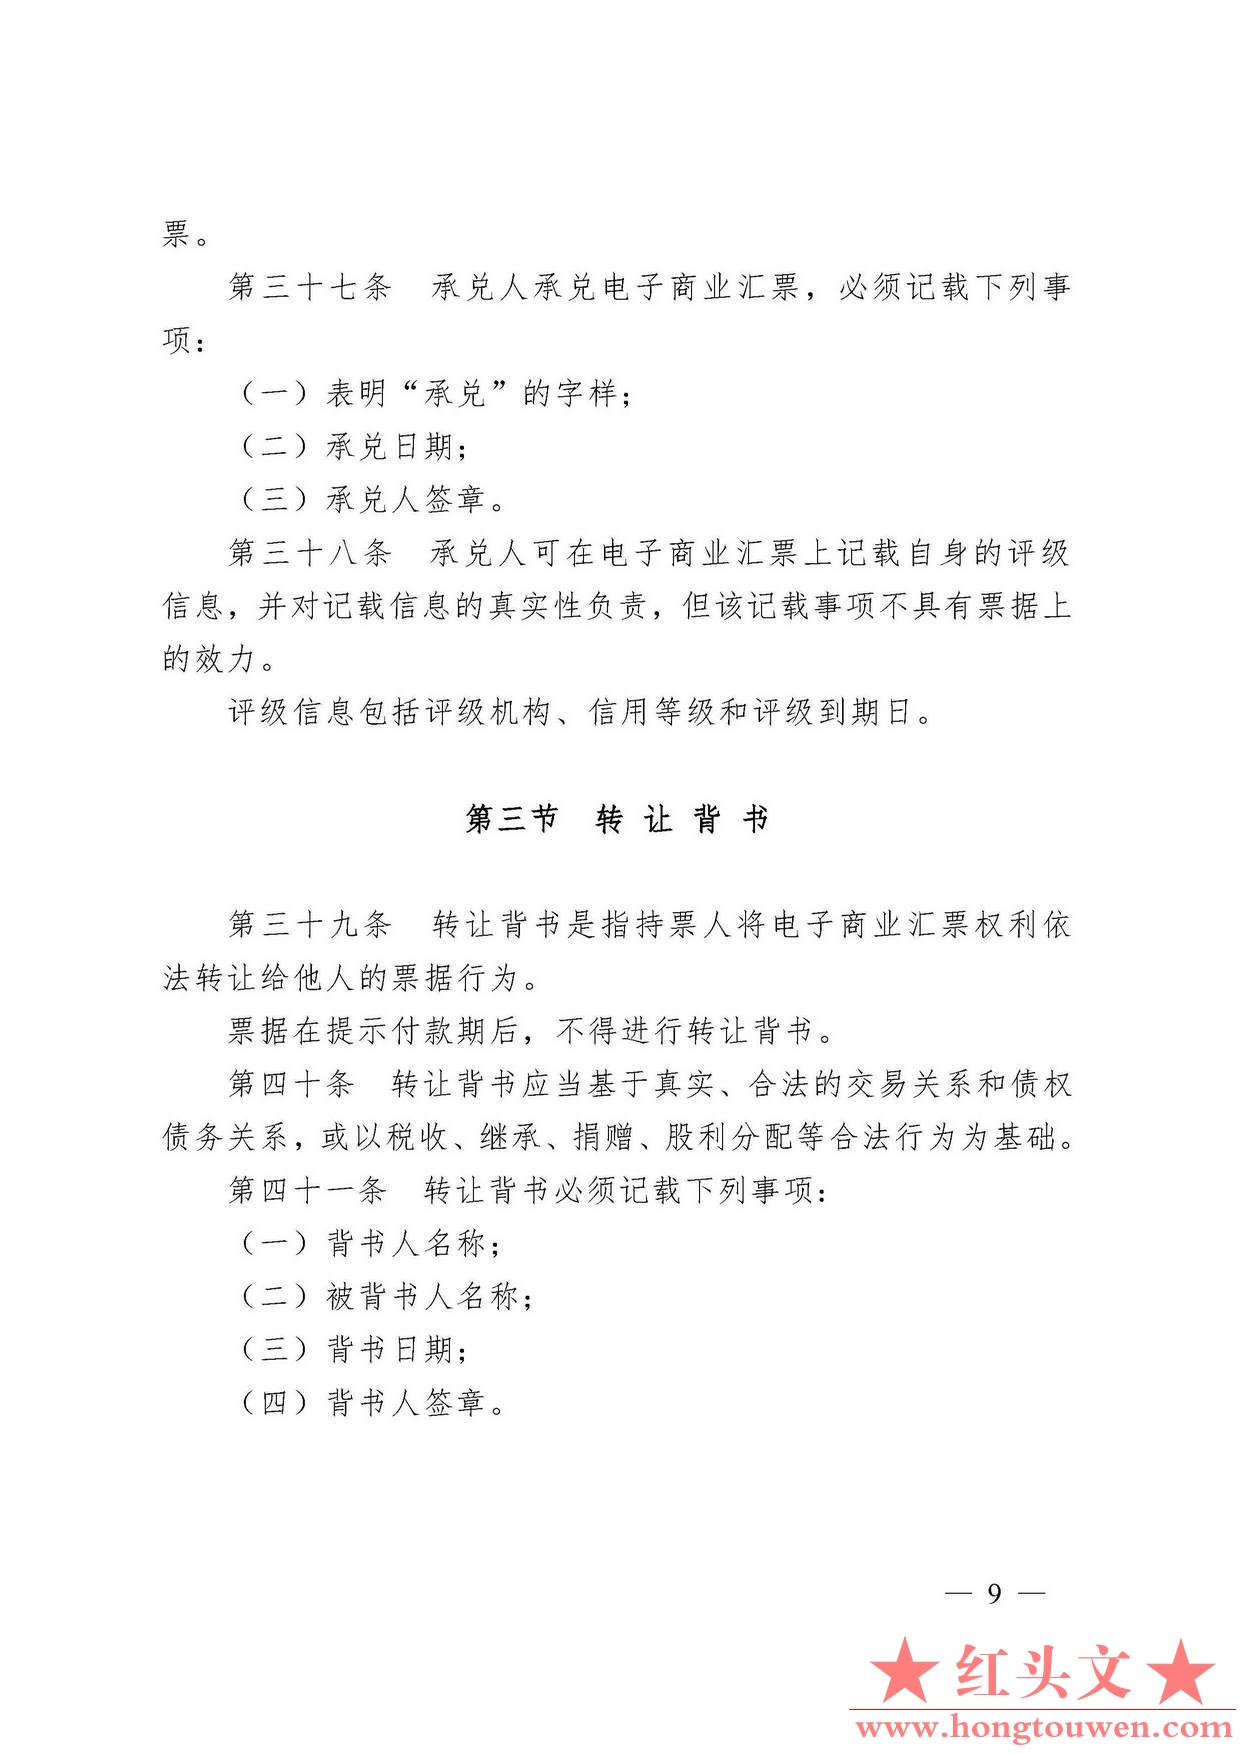 中国人民银行令[2009]2号-电子商业汇票管理办法_页面_09.jpg